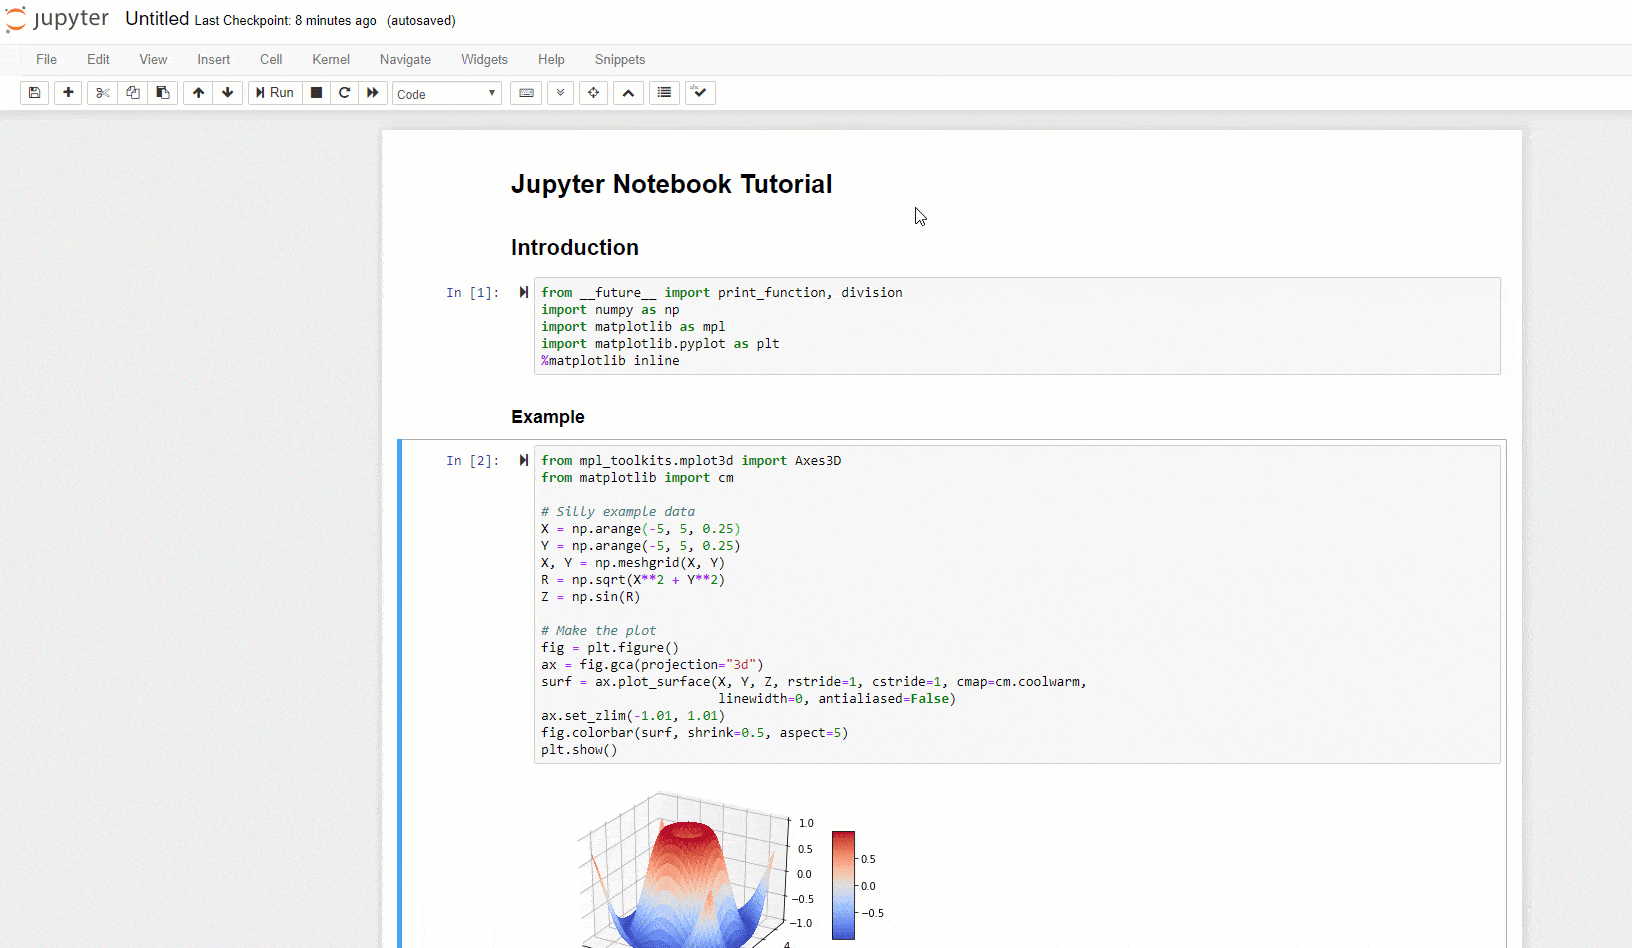 ezgif.com-optimize-1